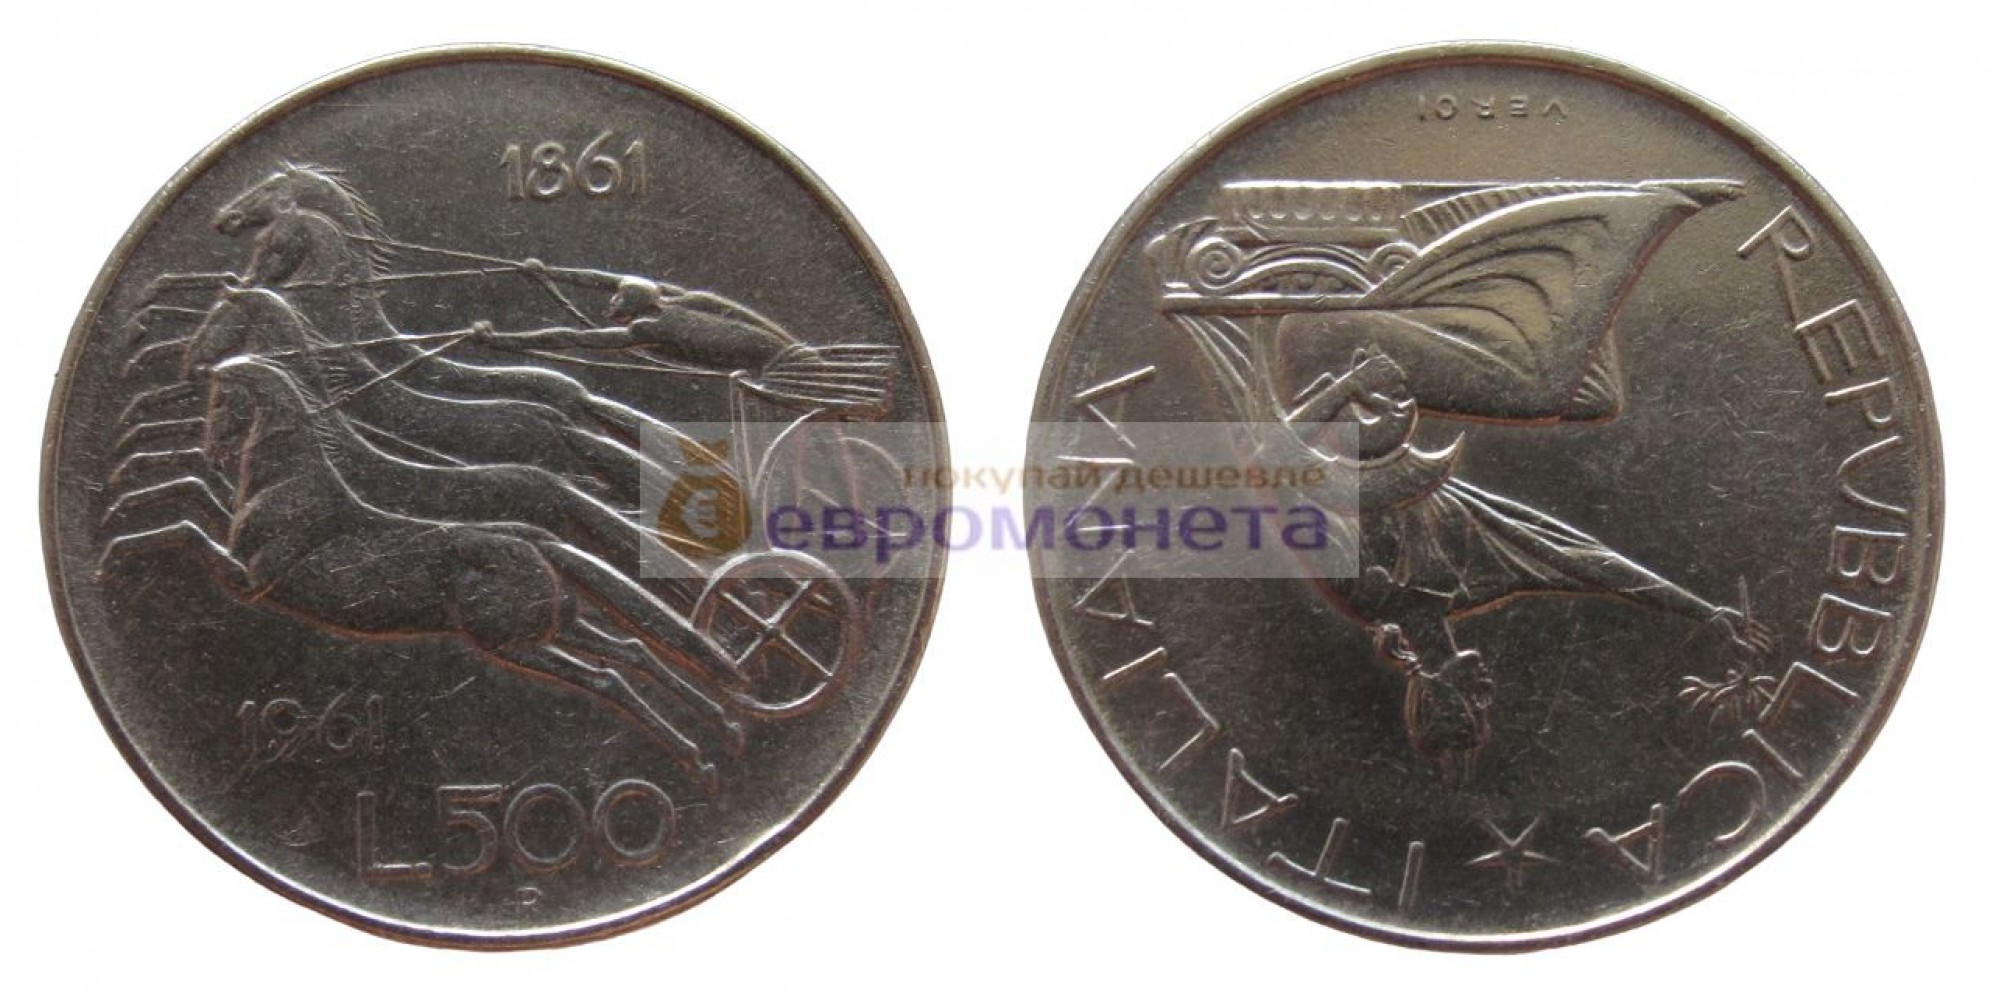 Италия 500 лир 1961 год R серебро 100 лет со дня объединения Италии